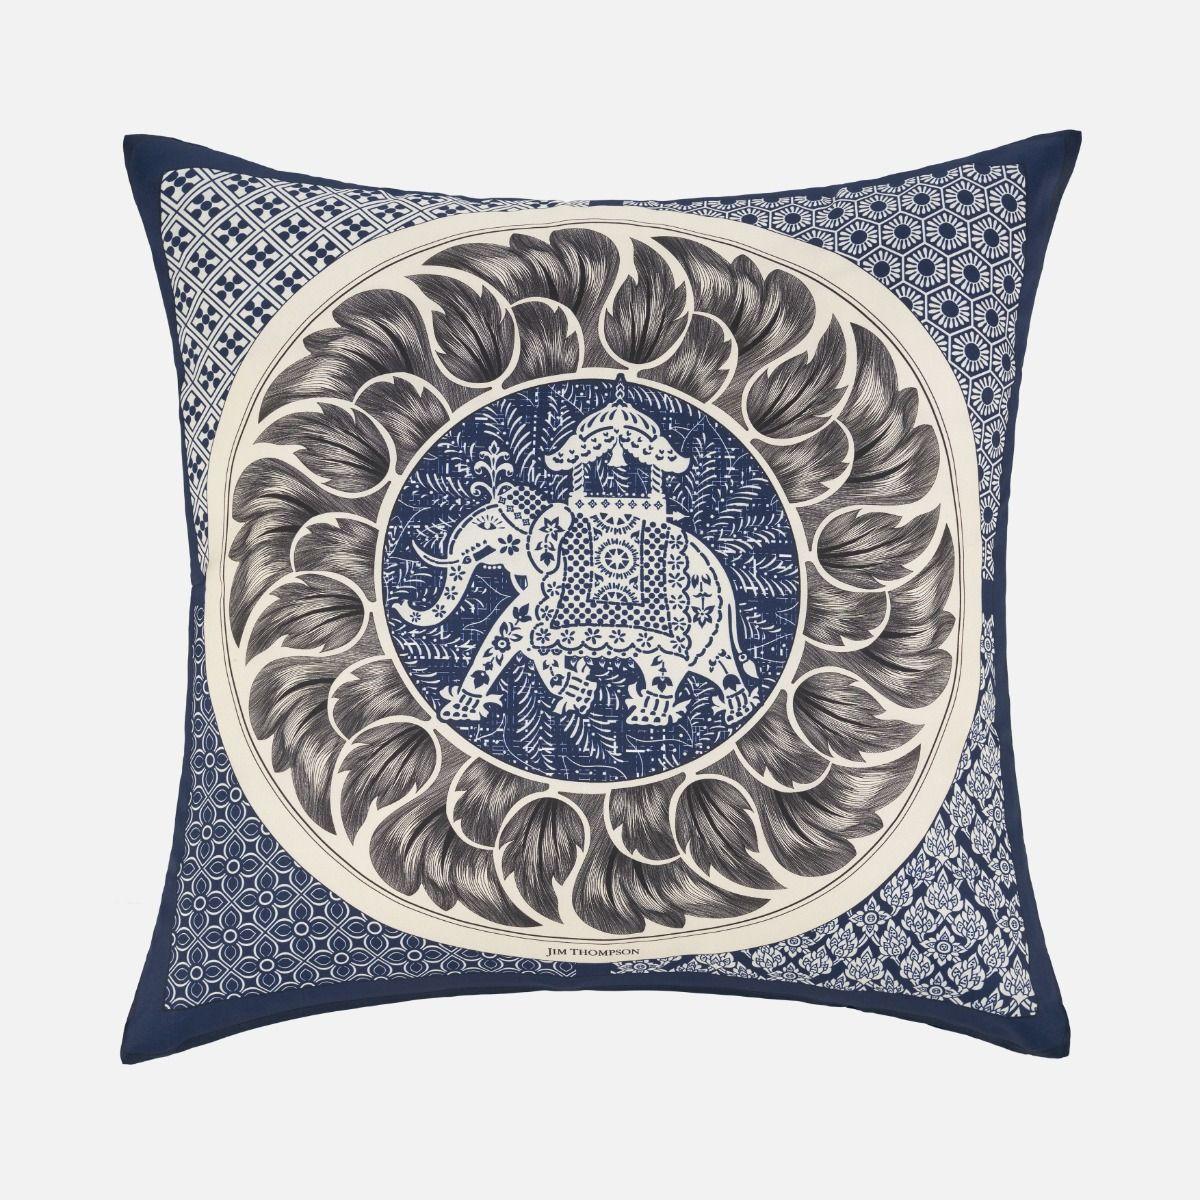 Elephant Medaillon Silk Cushion Cover 18" - Navy Blue